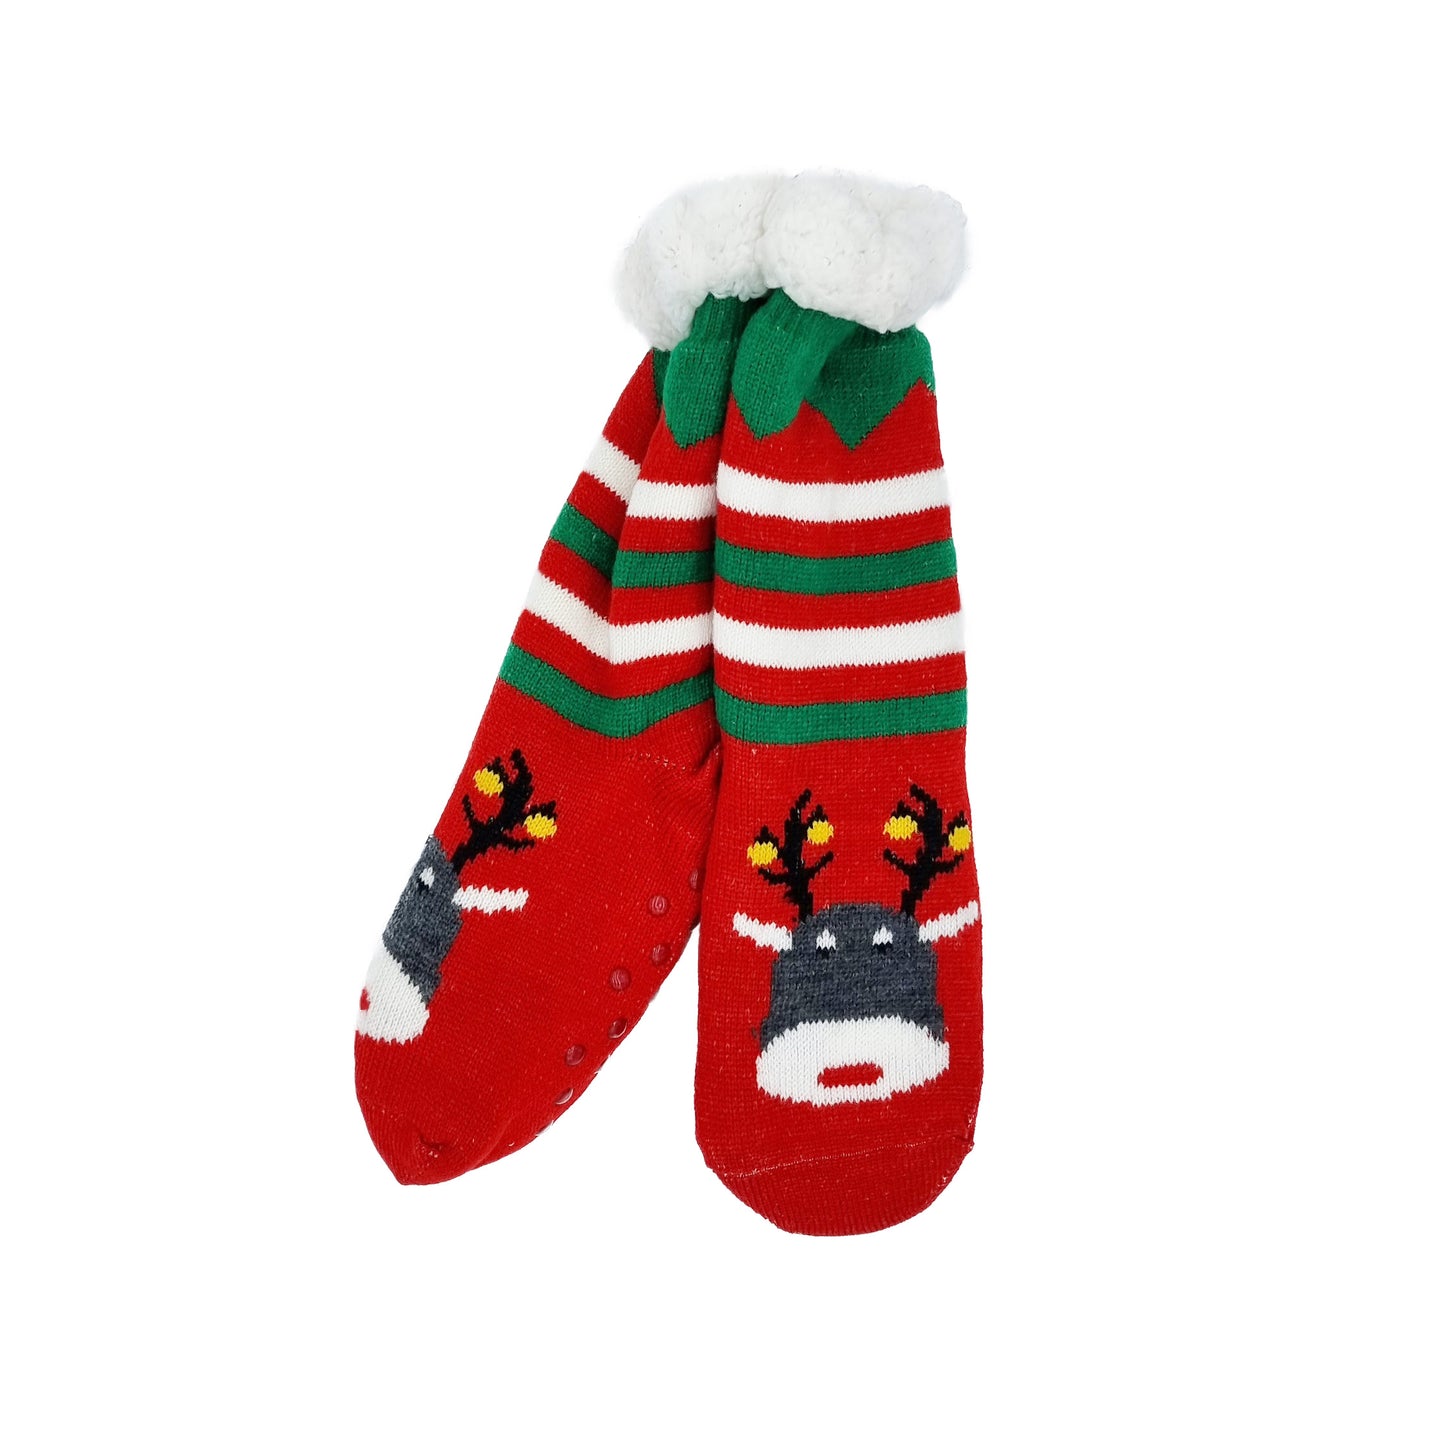 Anti-slip socks "Rudolph"